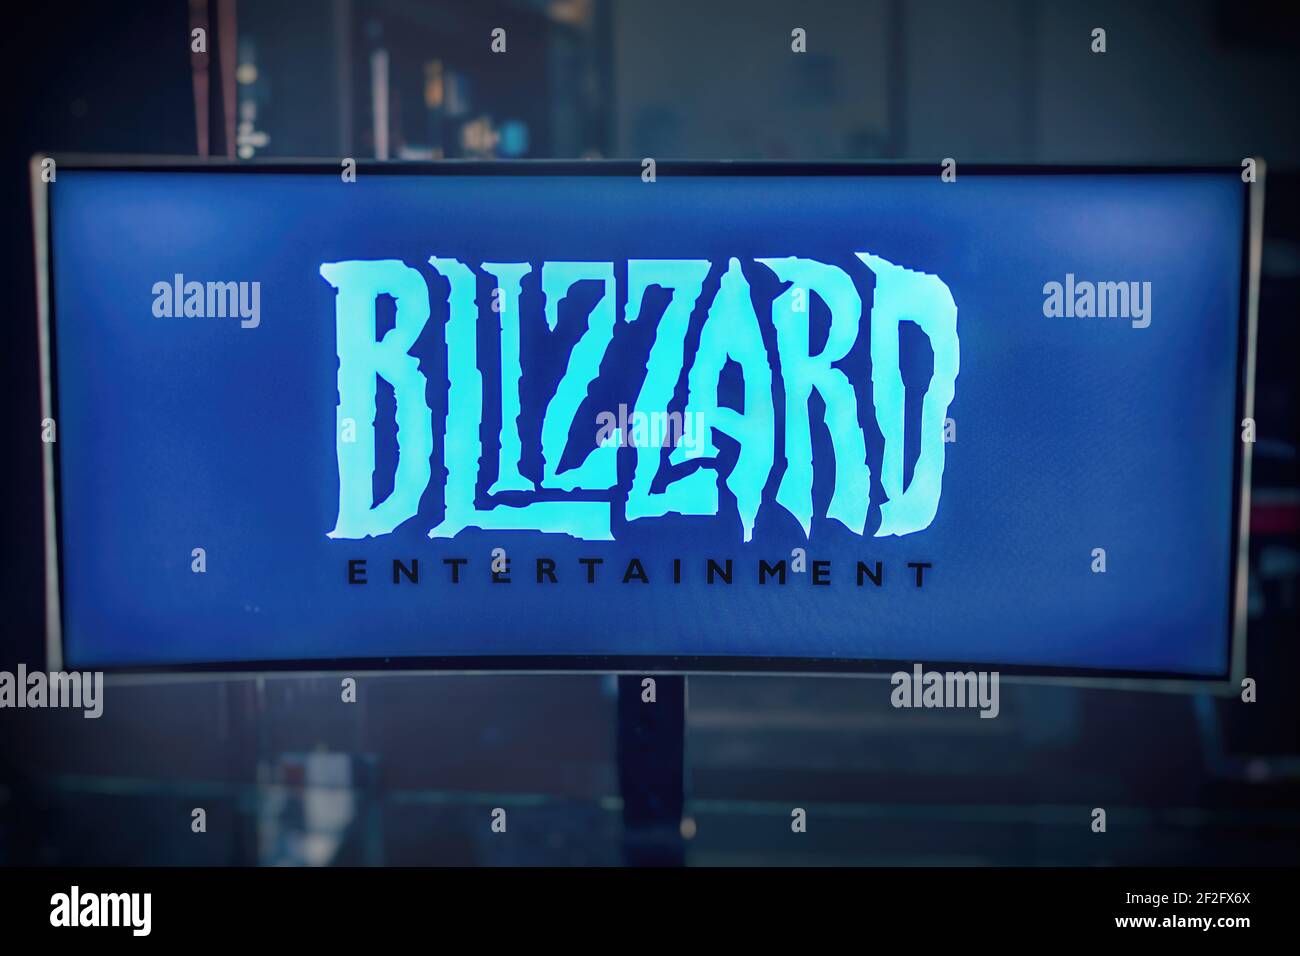 Logo de moniteur Blizzard Entertainment Software House producteur de jeux vidéo, célèbre pour Warcraft , Diablo et Starcraft Banque D'Images